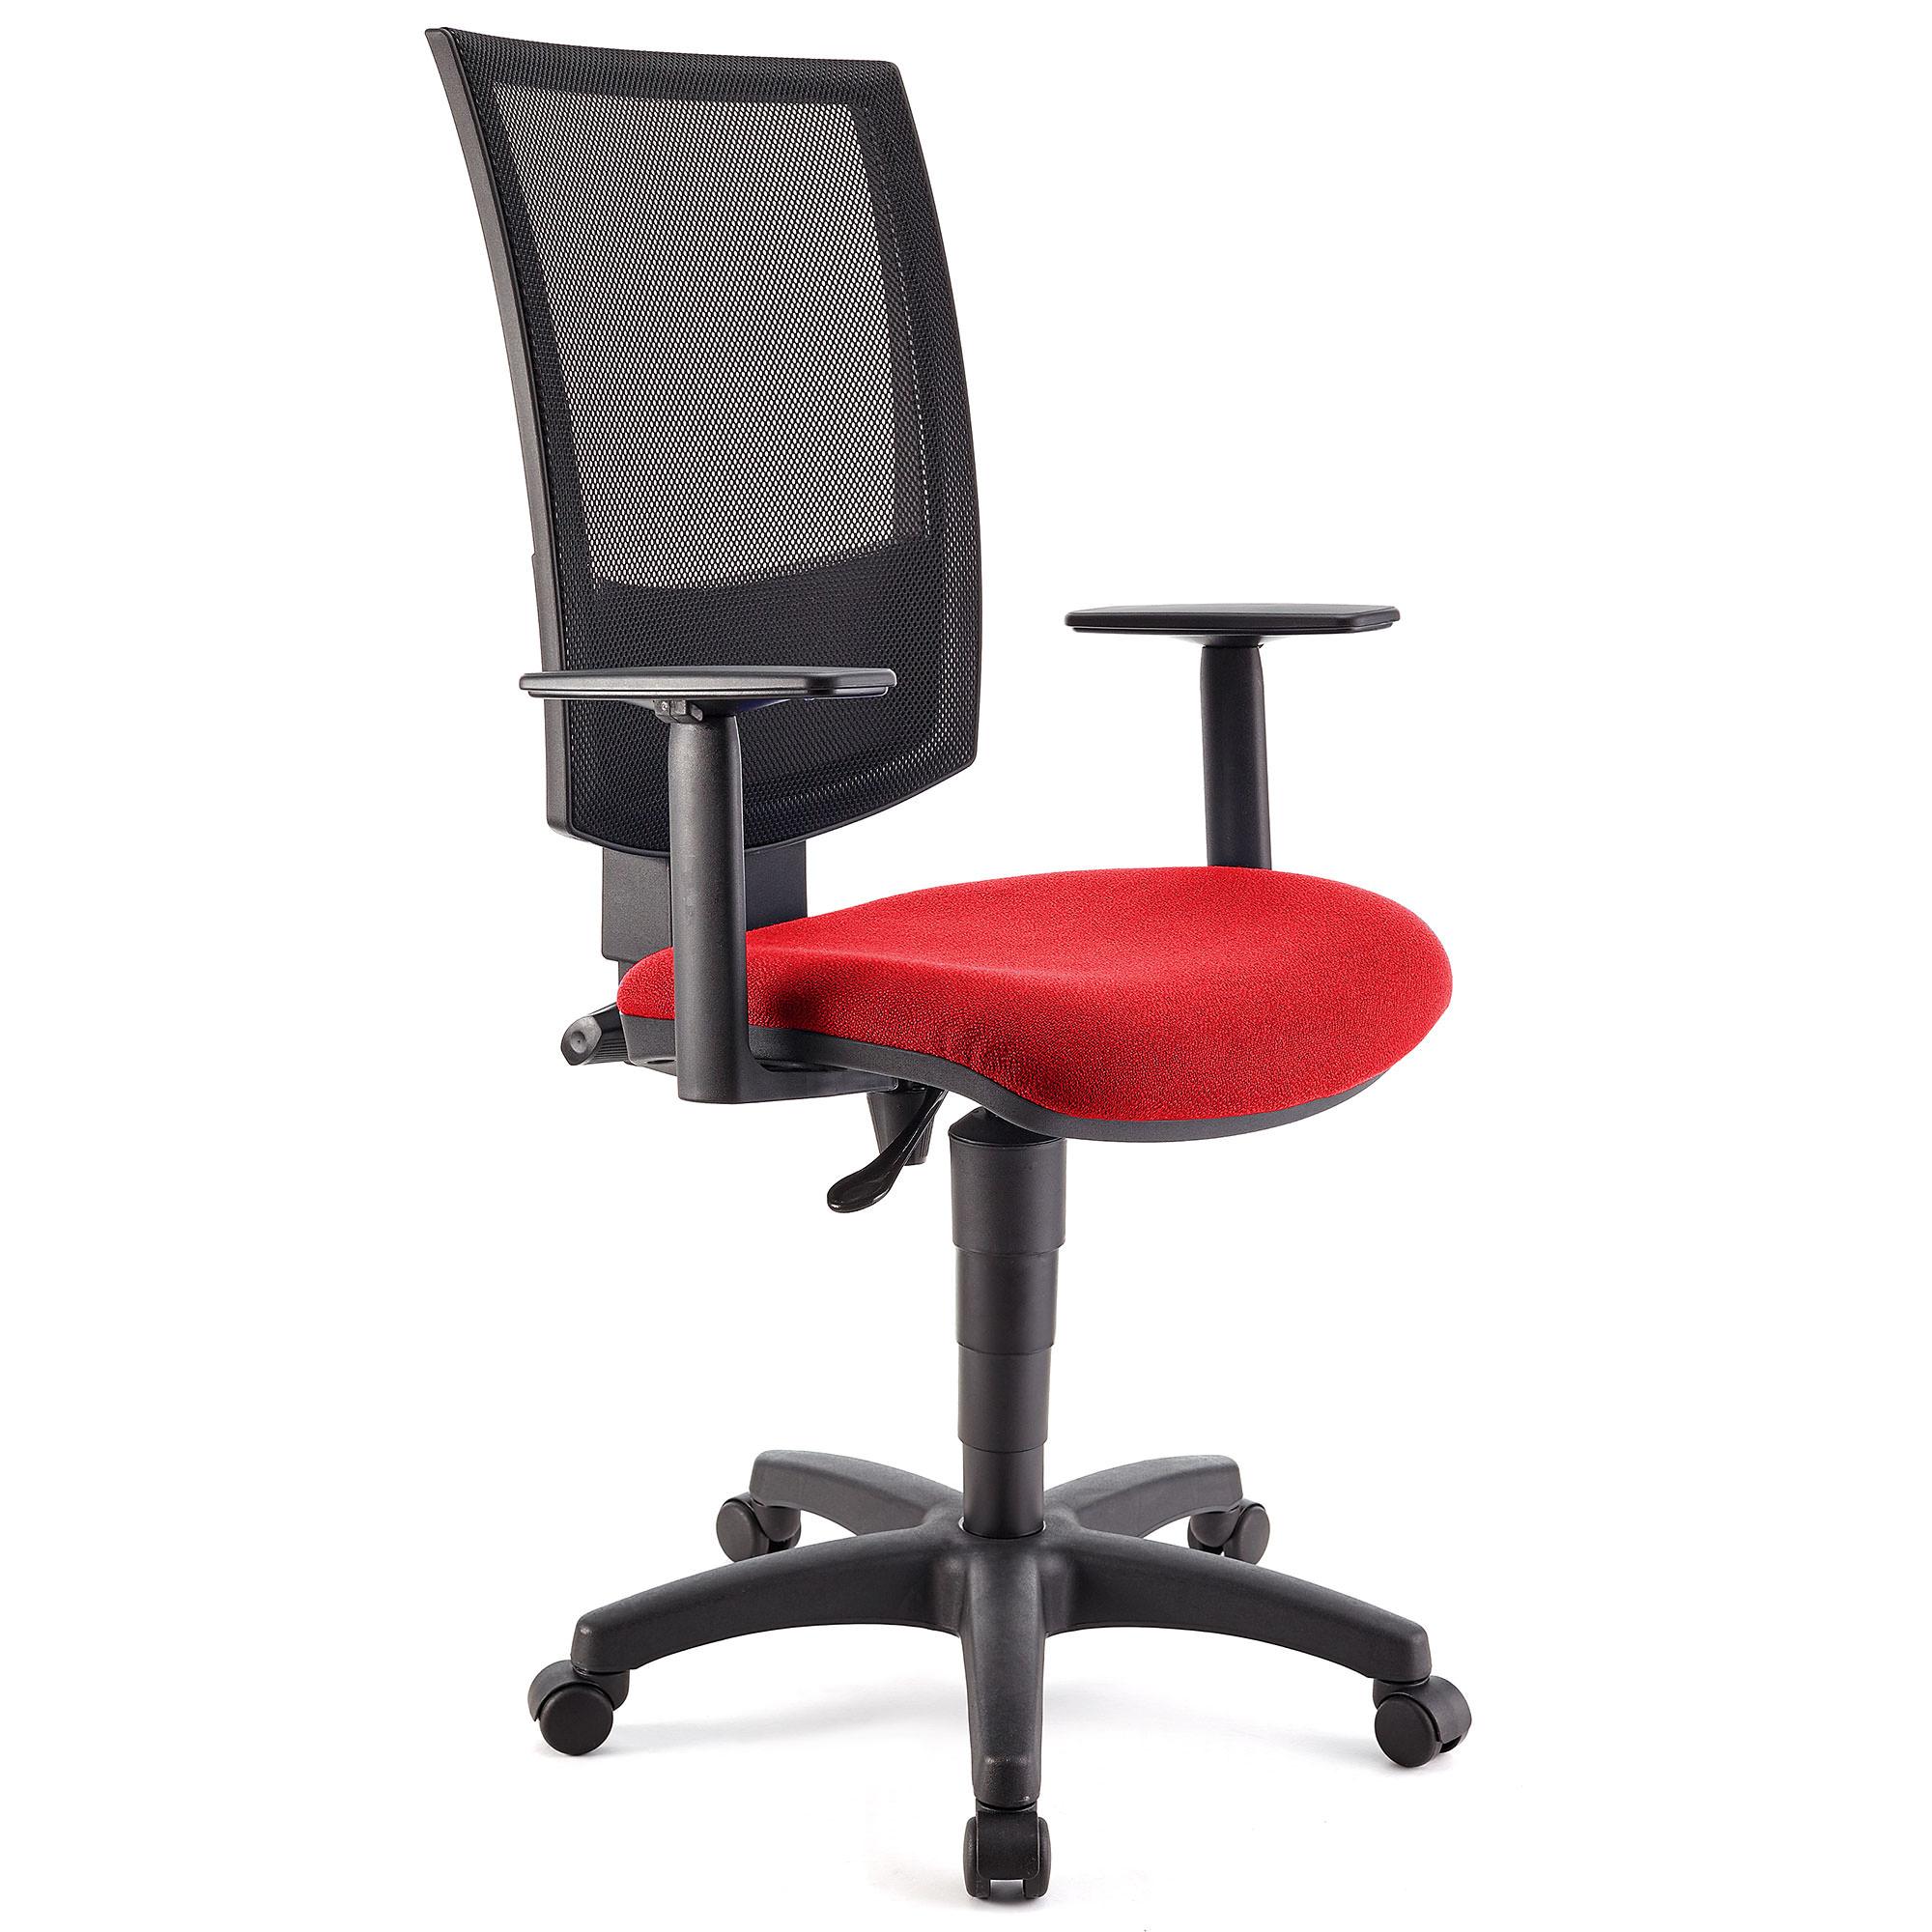 Bürostuhl PANDORA PLUS mit verstellbaren Armlehnen, Rückenlehne mit Netzbezug, dicke Polsterung, Farbe Rot